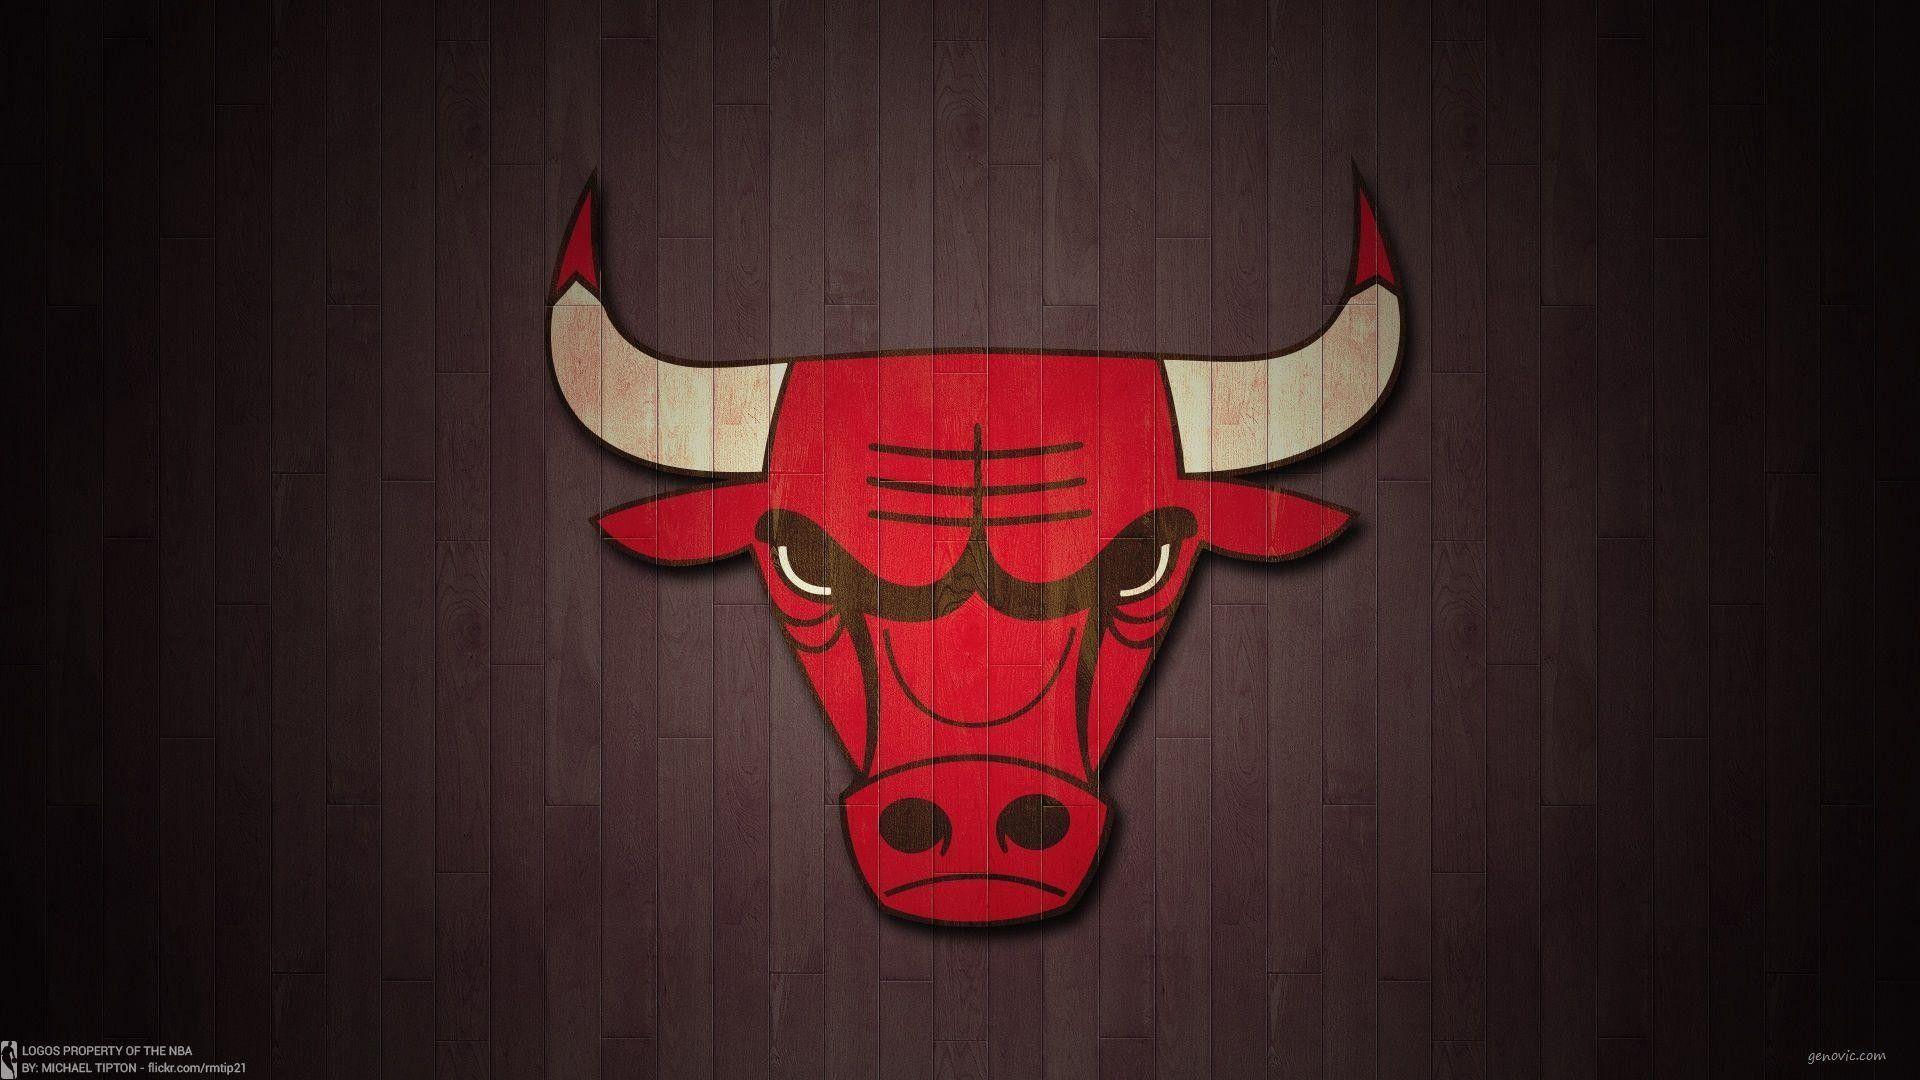 Bulls Logo Wallpapers - Top Free Bulls